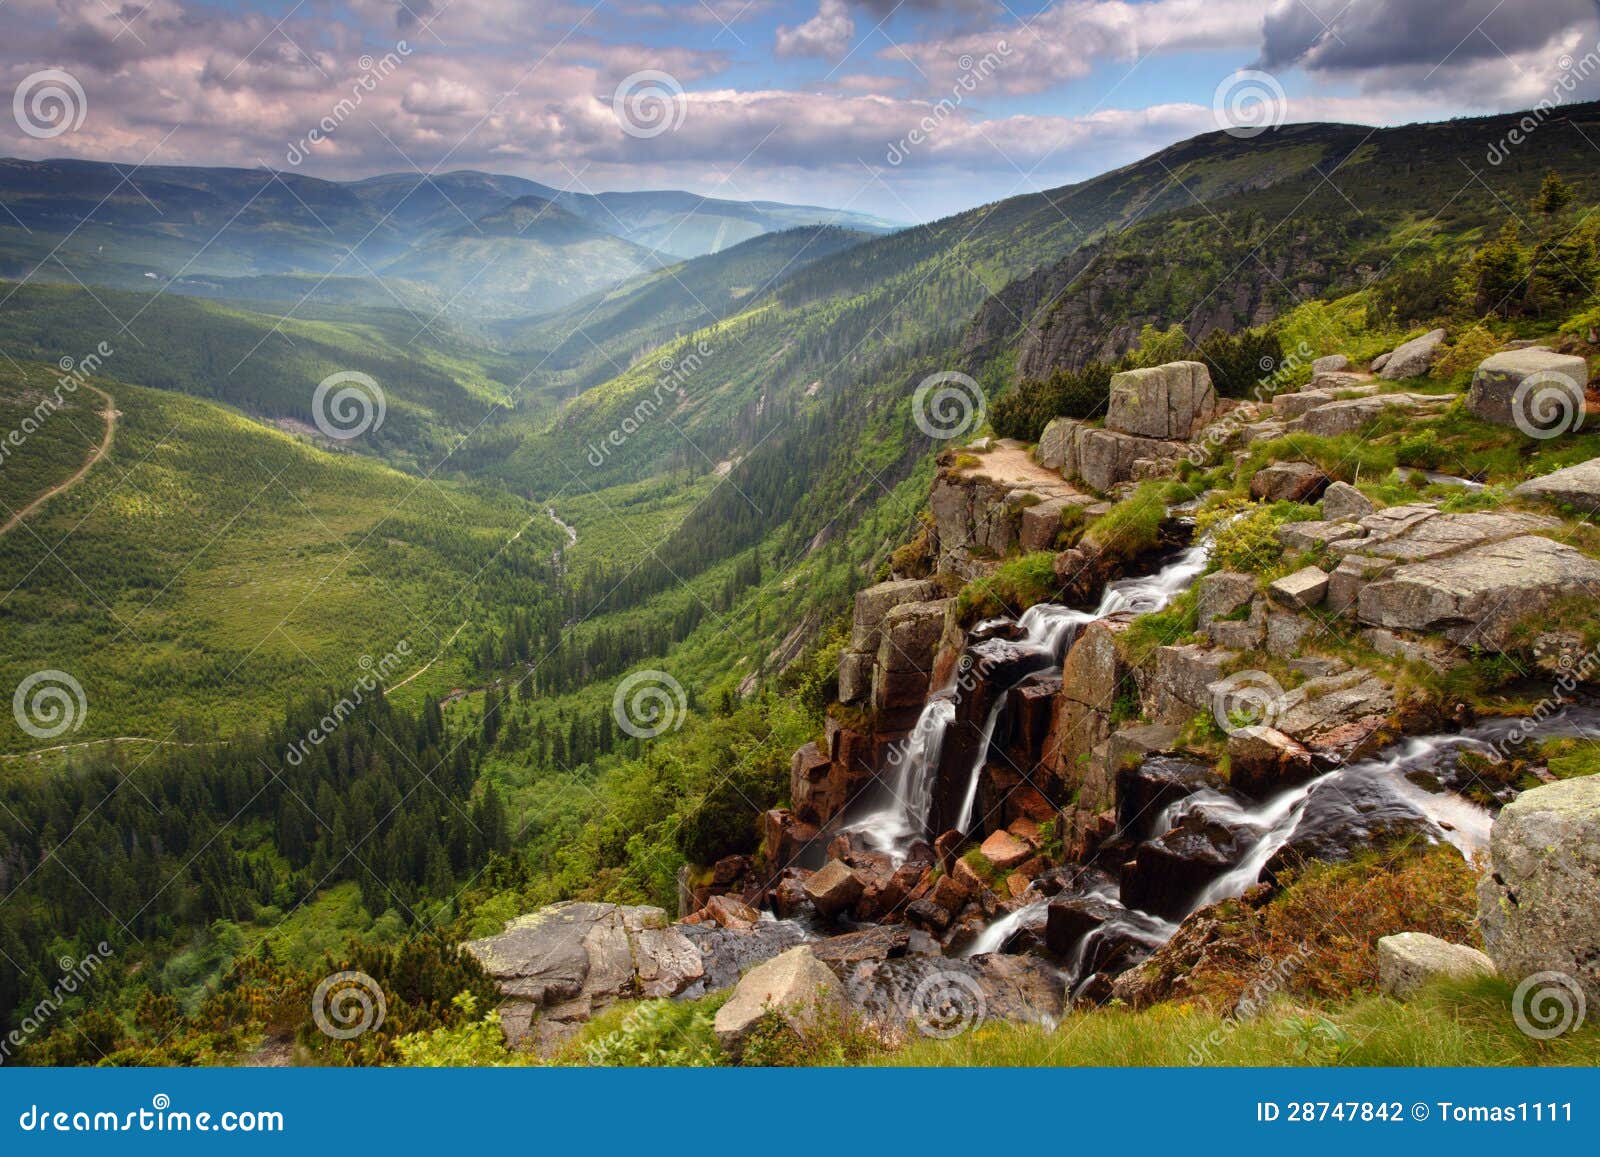 pancavsky waterfall in krkonose mountain - czech republic